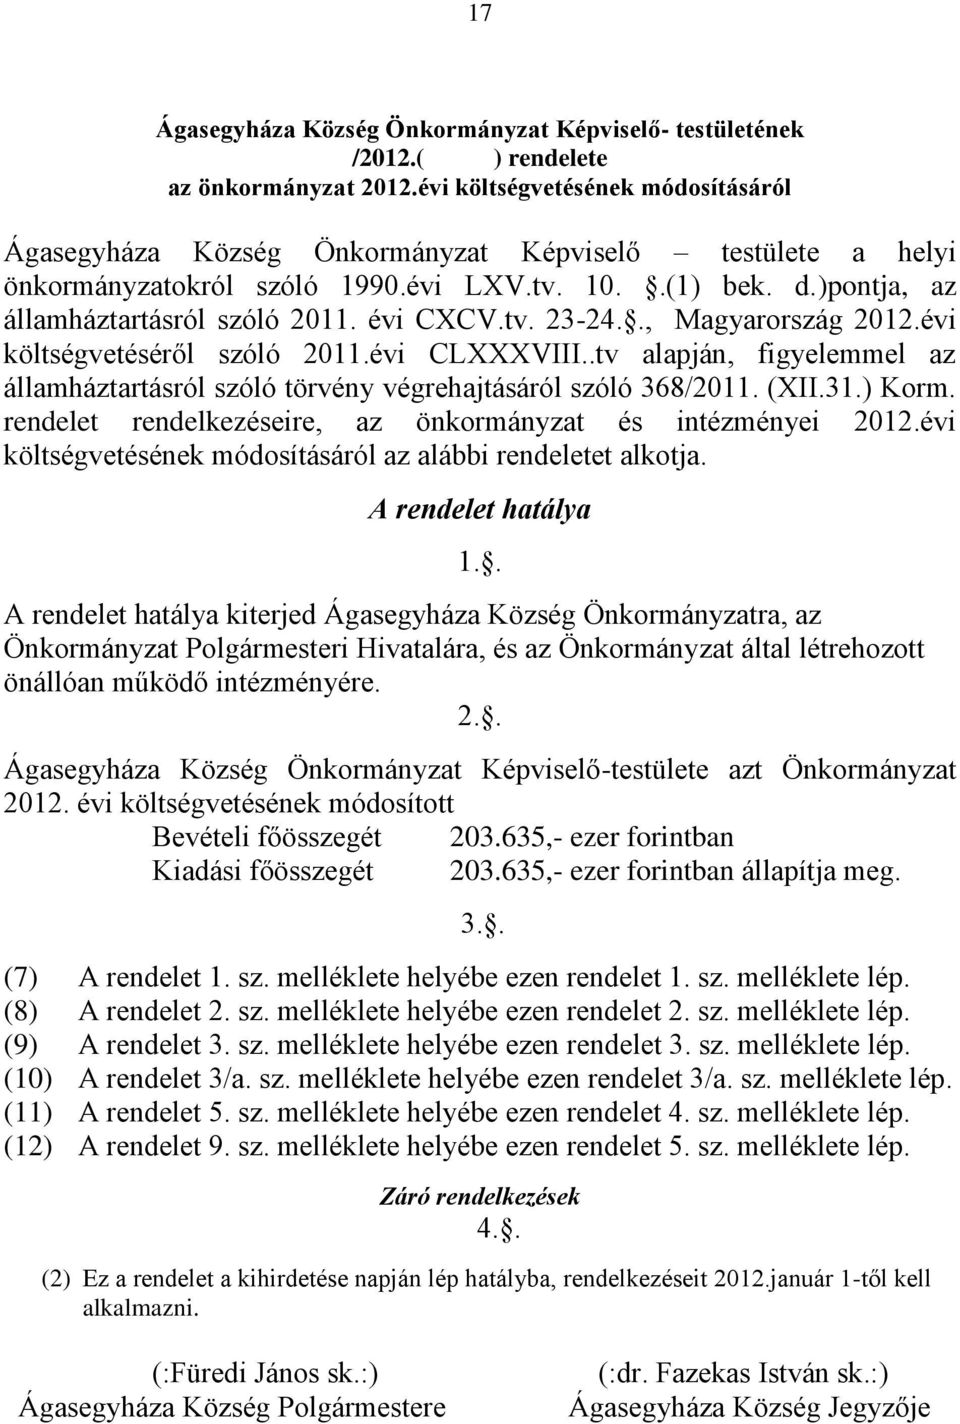 évi CXCV.tv. 23-24.., Magyarország 2012.évi költségvetéséről szóló 2011.évi CLXXXVIII..tv alapján, figyelemmel az államháztartásról szóló törvény végrehajtásáról szóló 368/2011. (XII.31.) Korm.